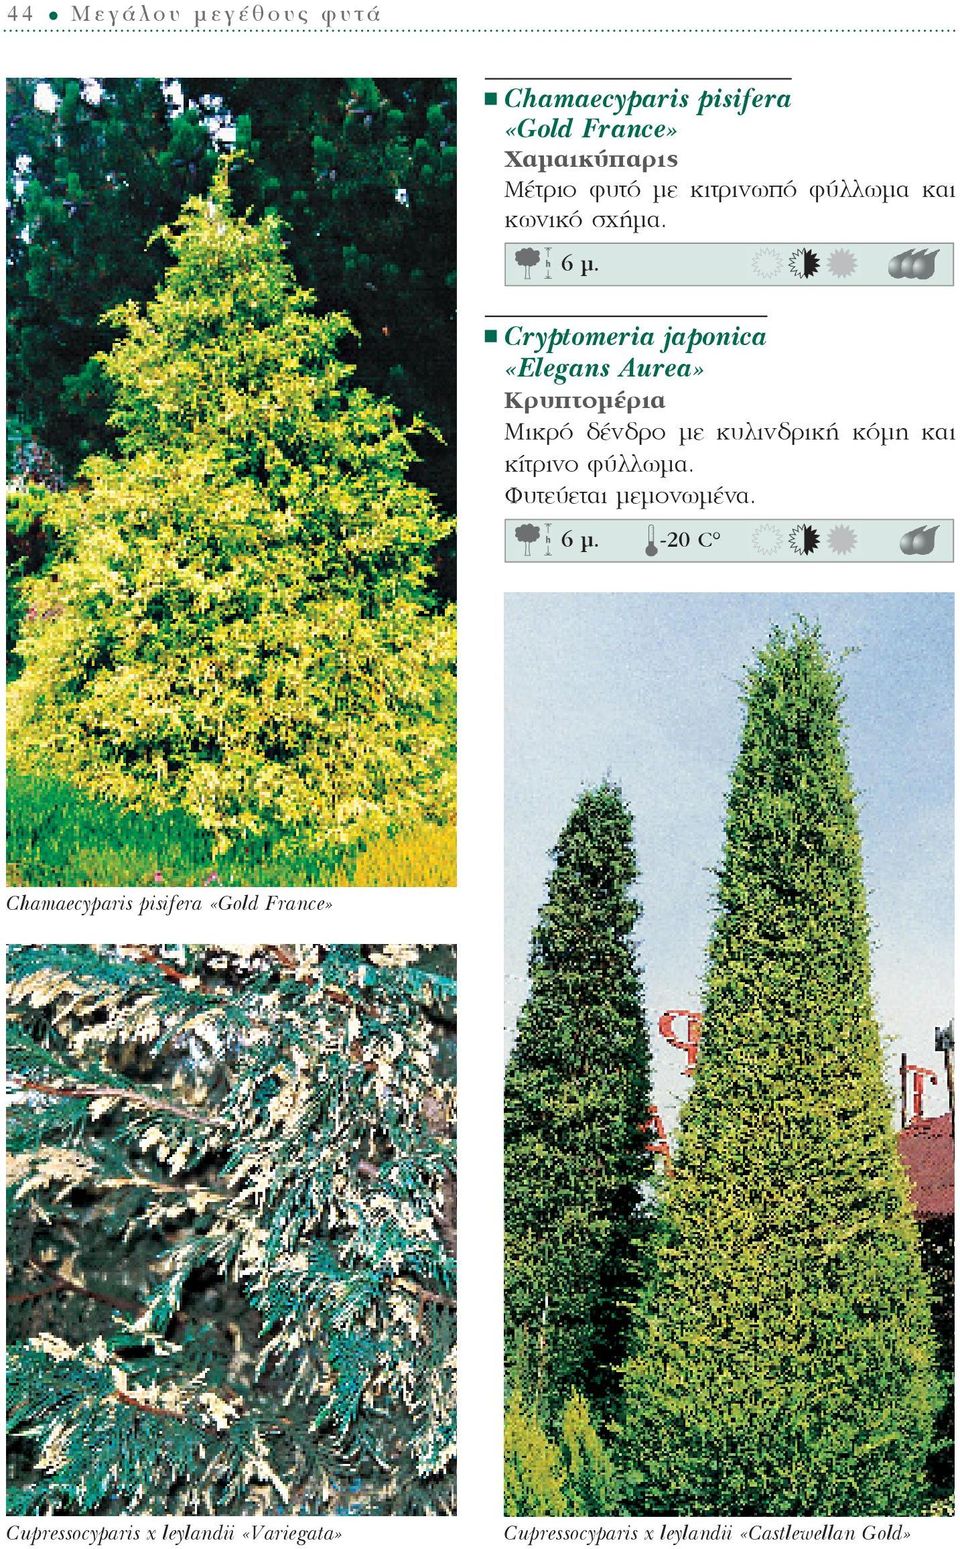 Cryptomeria japonica «Elegans Aurea» Κρυπτομέρια Μικρό δένδρο με κυλινδρική κόμη και κίτρινο